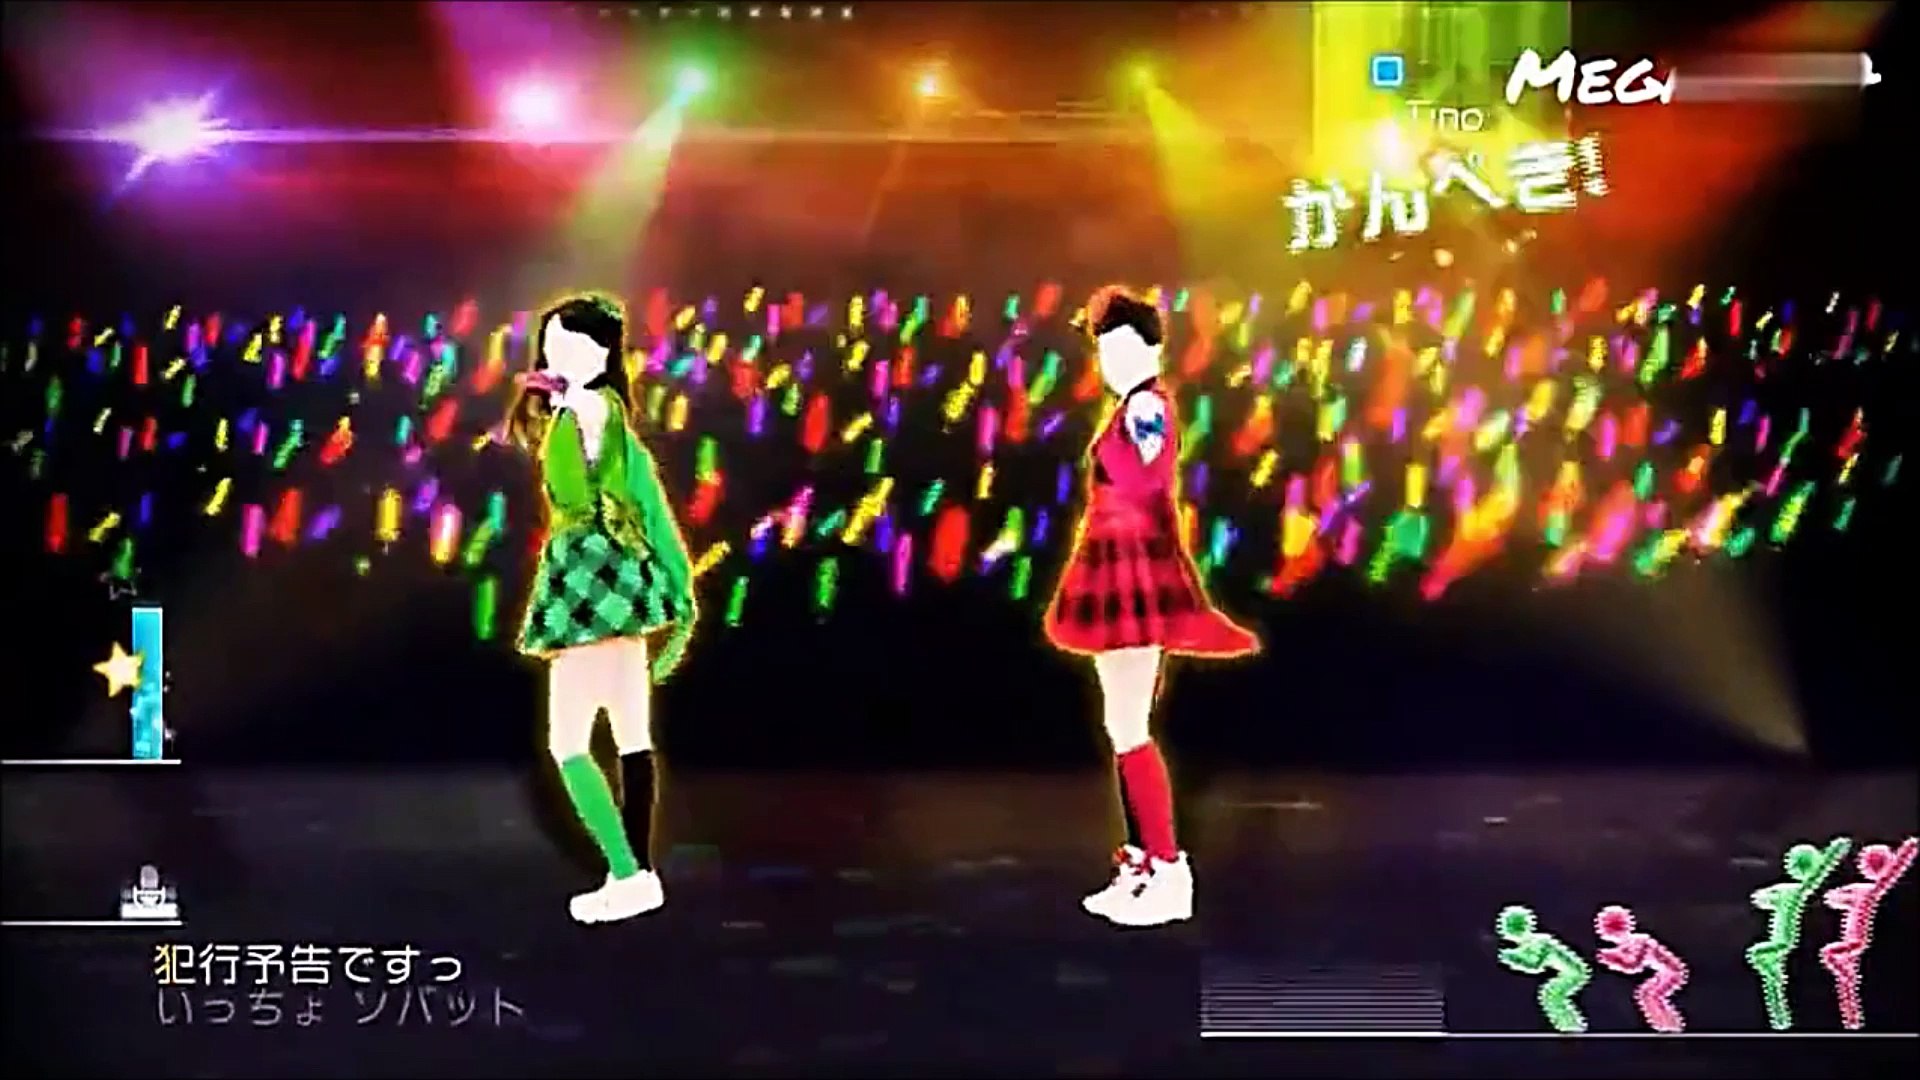 行くぜっ!怪盗少女 Just Dance Wii U - video Dailymotion